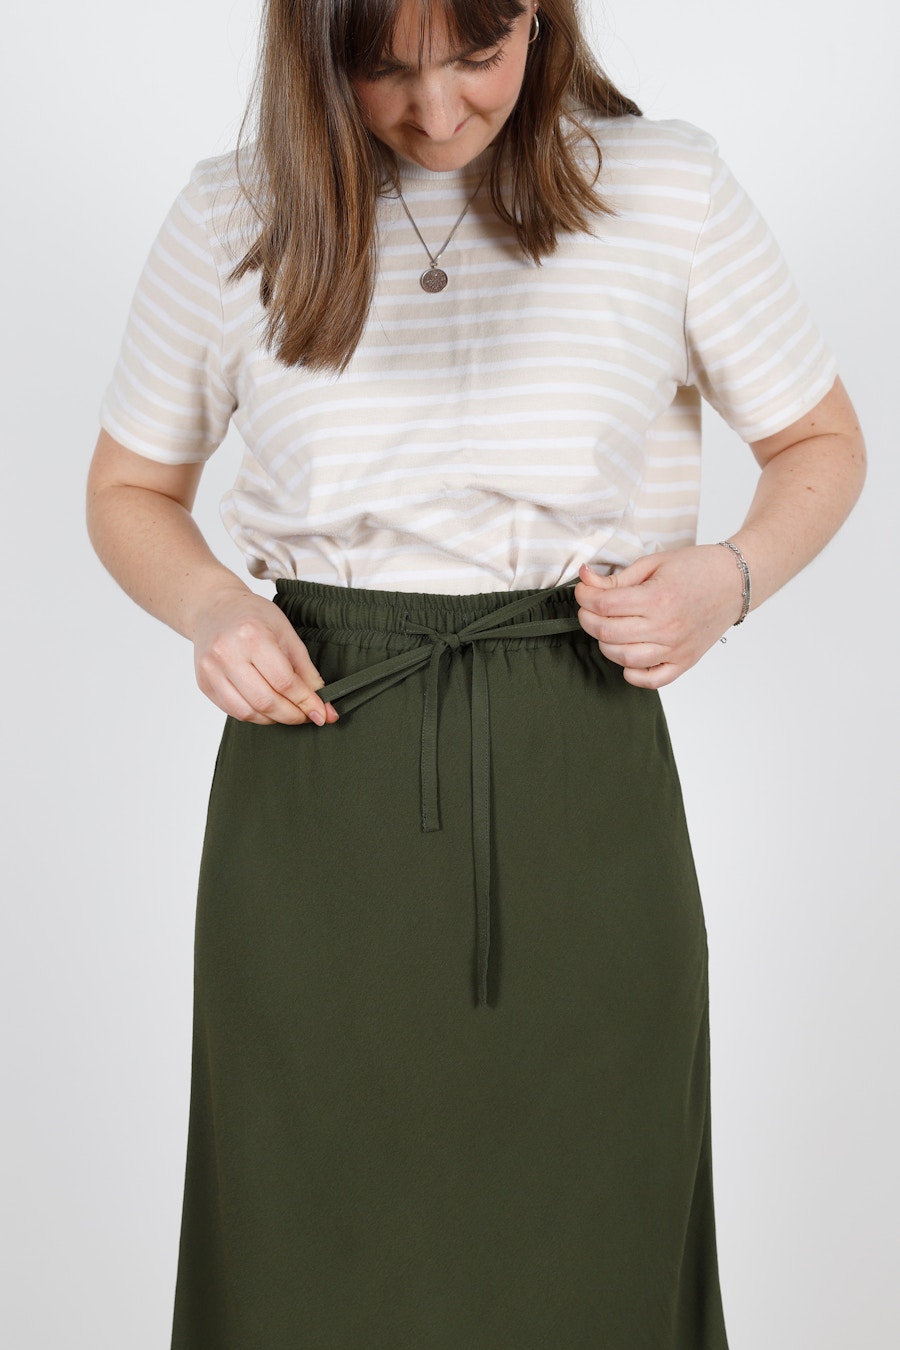 Tie Soften Studio Clo Skirt The Fabric Store Blog